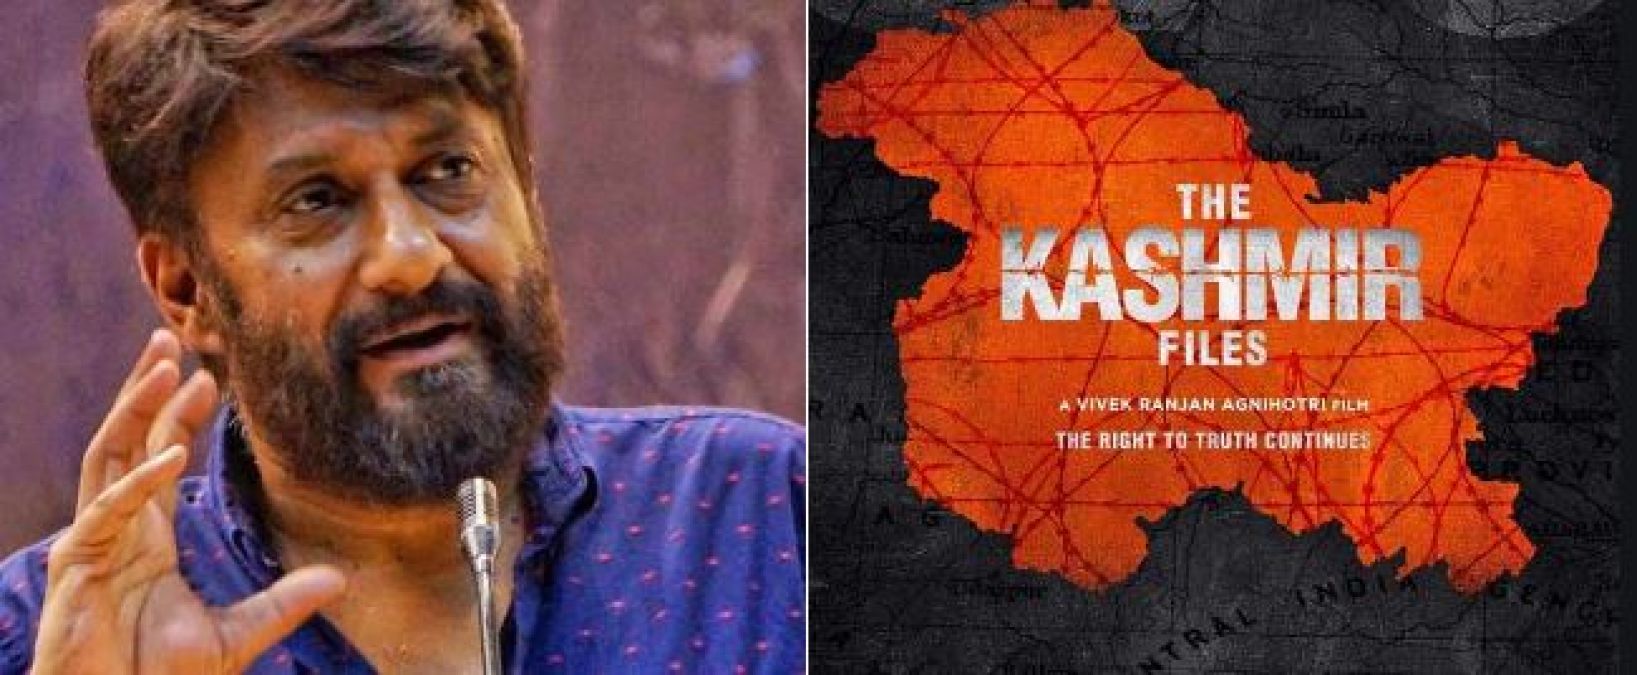 'द कश्मीर फाइल्स' के चलते मुश्किल में फंसे विवेक रंजन अग्निहोत्री, मिल रही जान से मारने की धमकियां